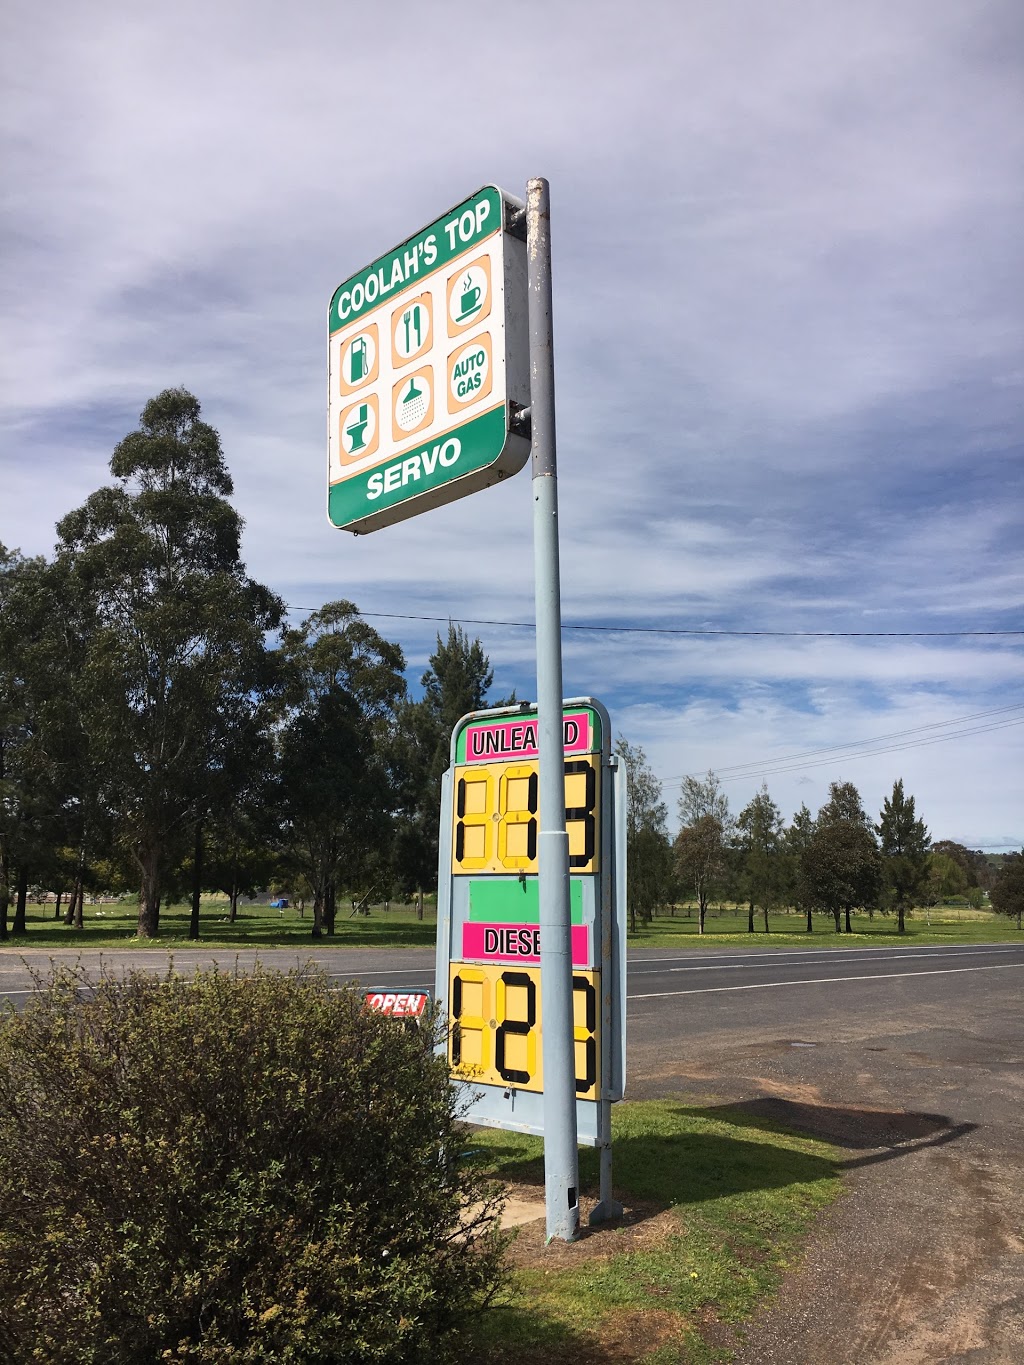 Coolahs Top Servo | gas station | 1A Binnia St, Coolah NSW 2843, Australia | 0263771188 OR +61 2 6377 1188